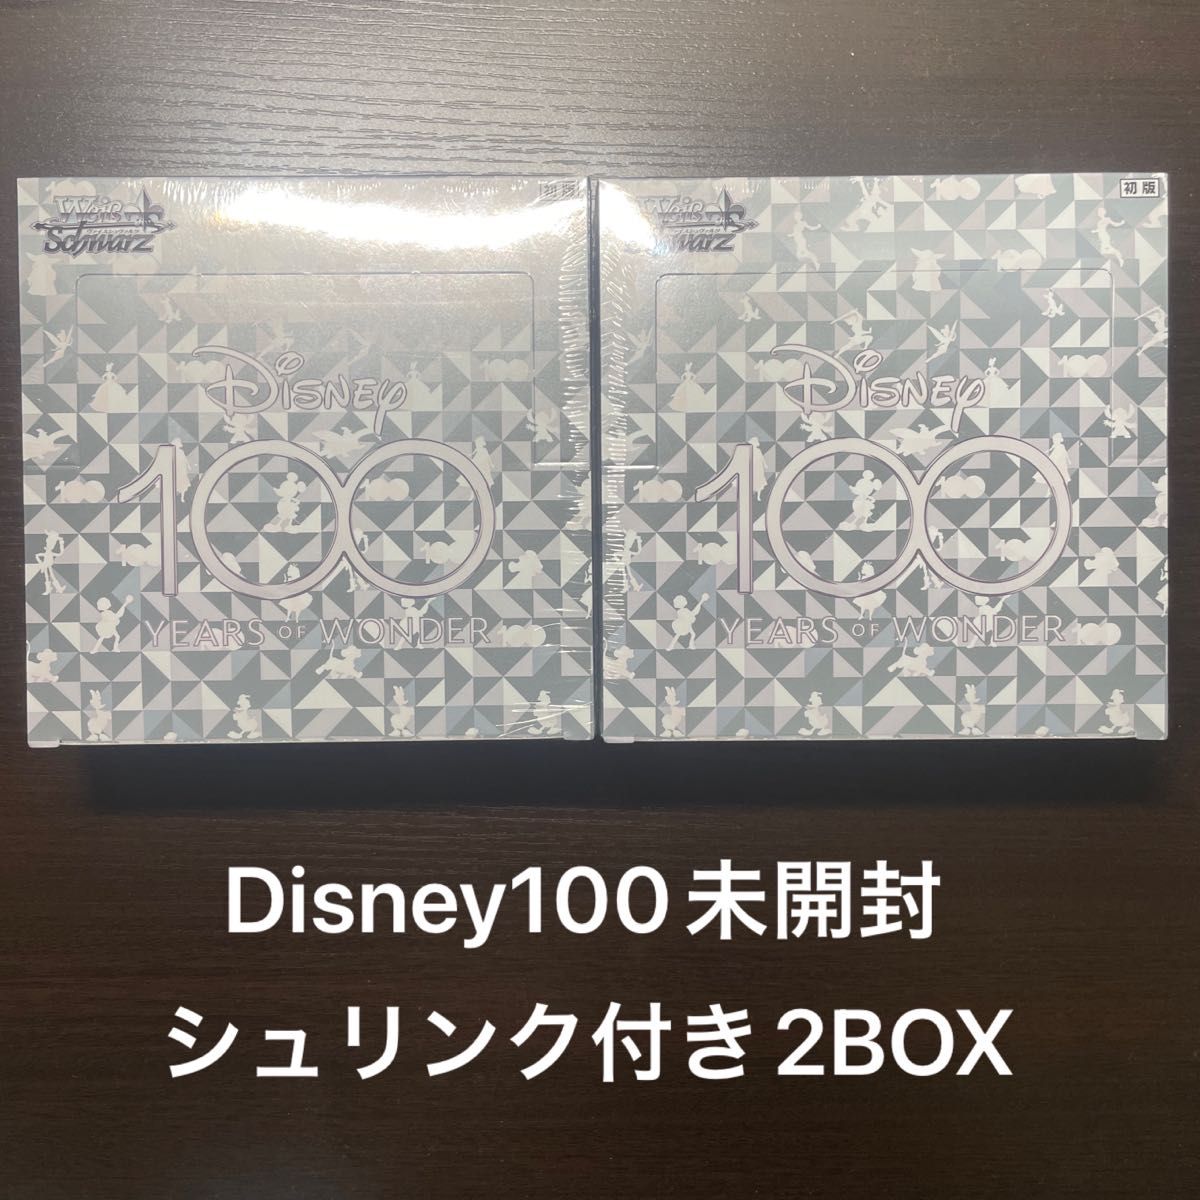 一番の 【新品未開封】Disney100 シュリンク付き 2BOX ヴァイス